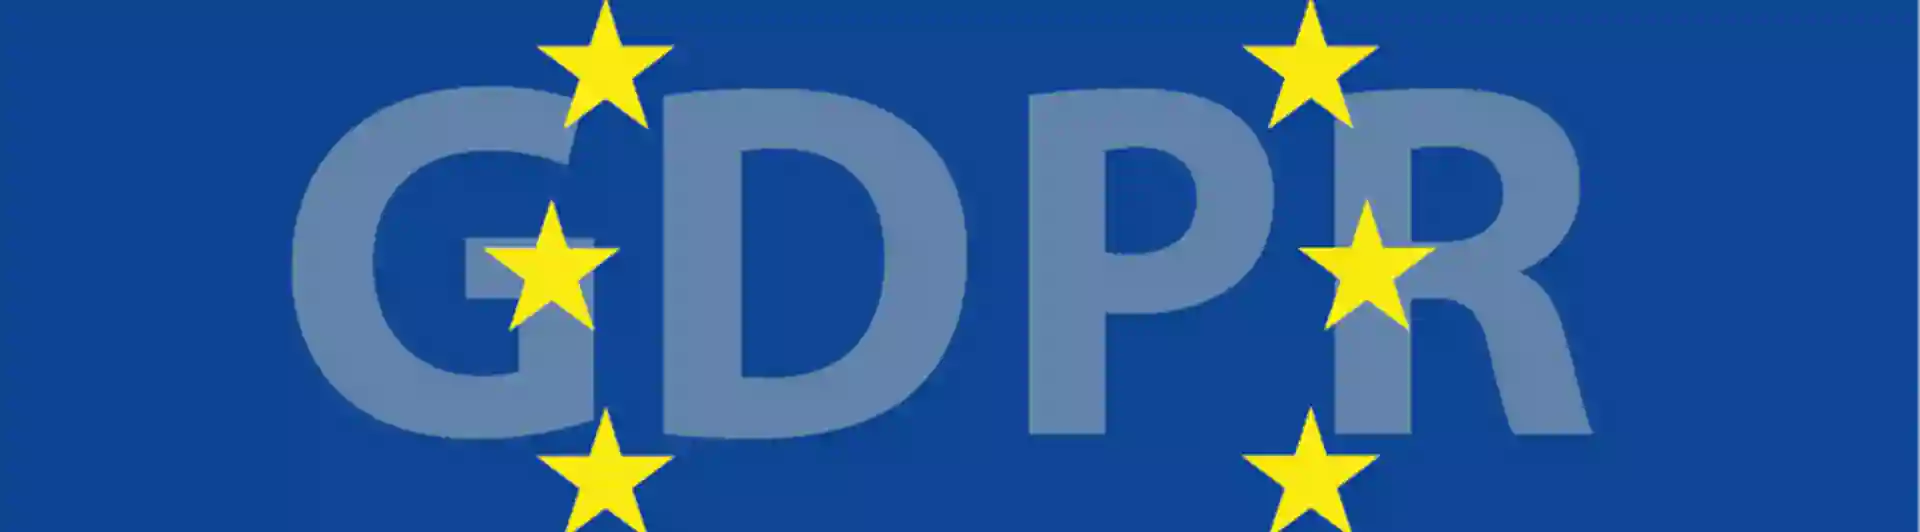 EU symbol GDPR text